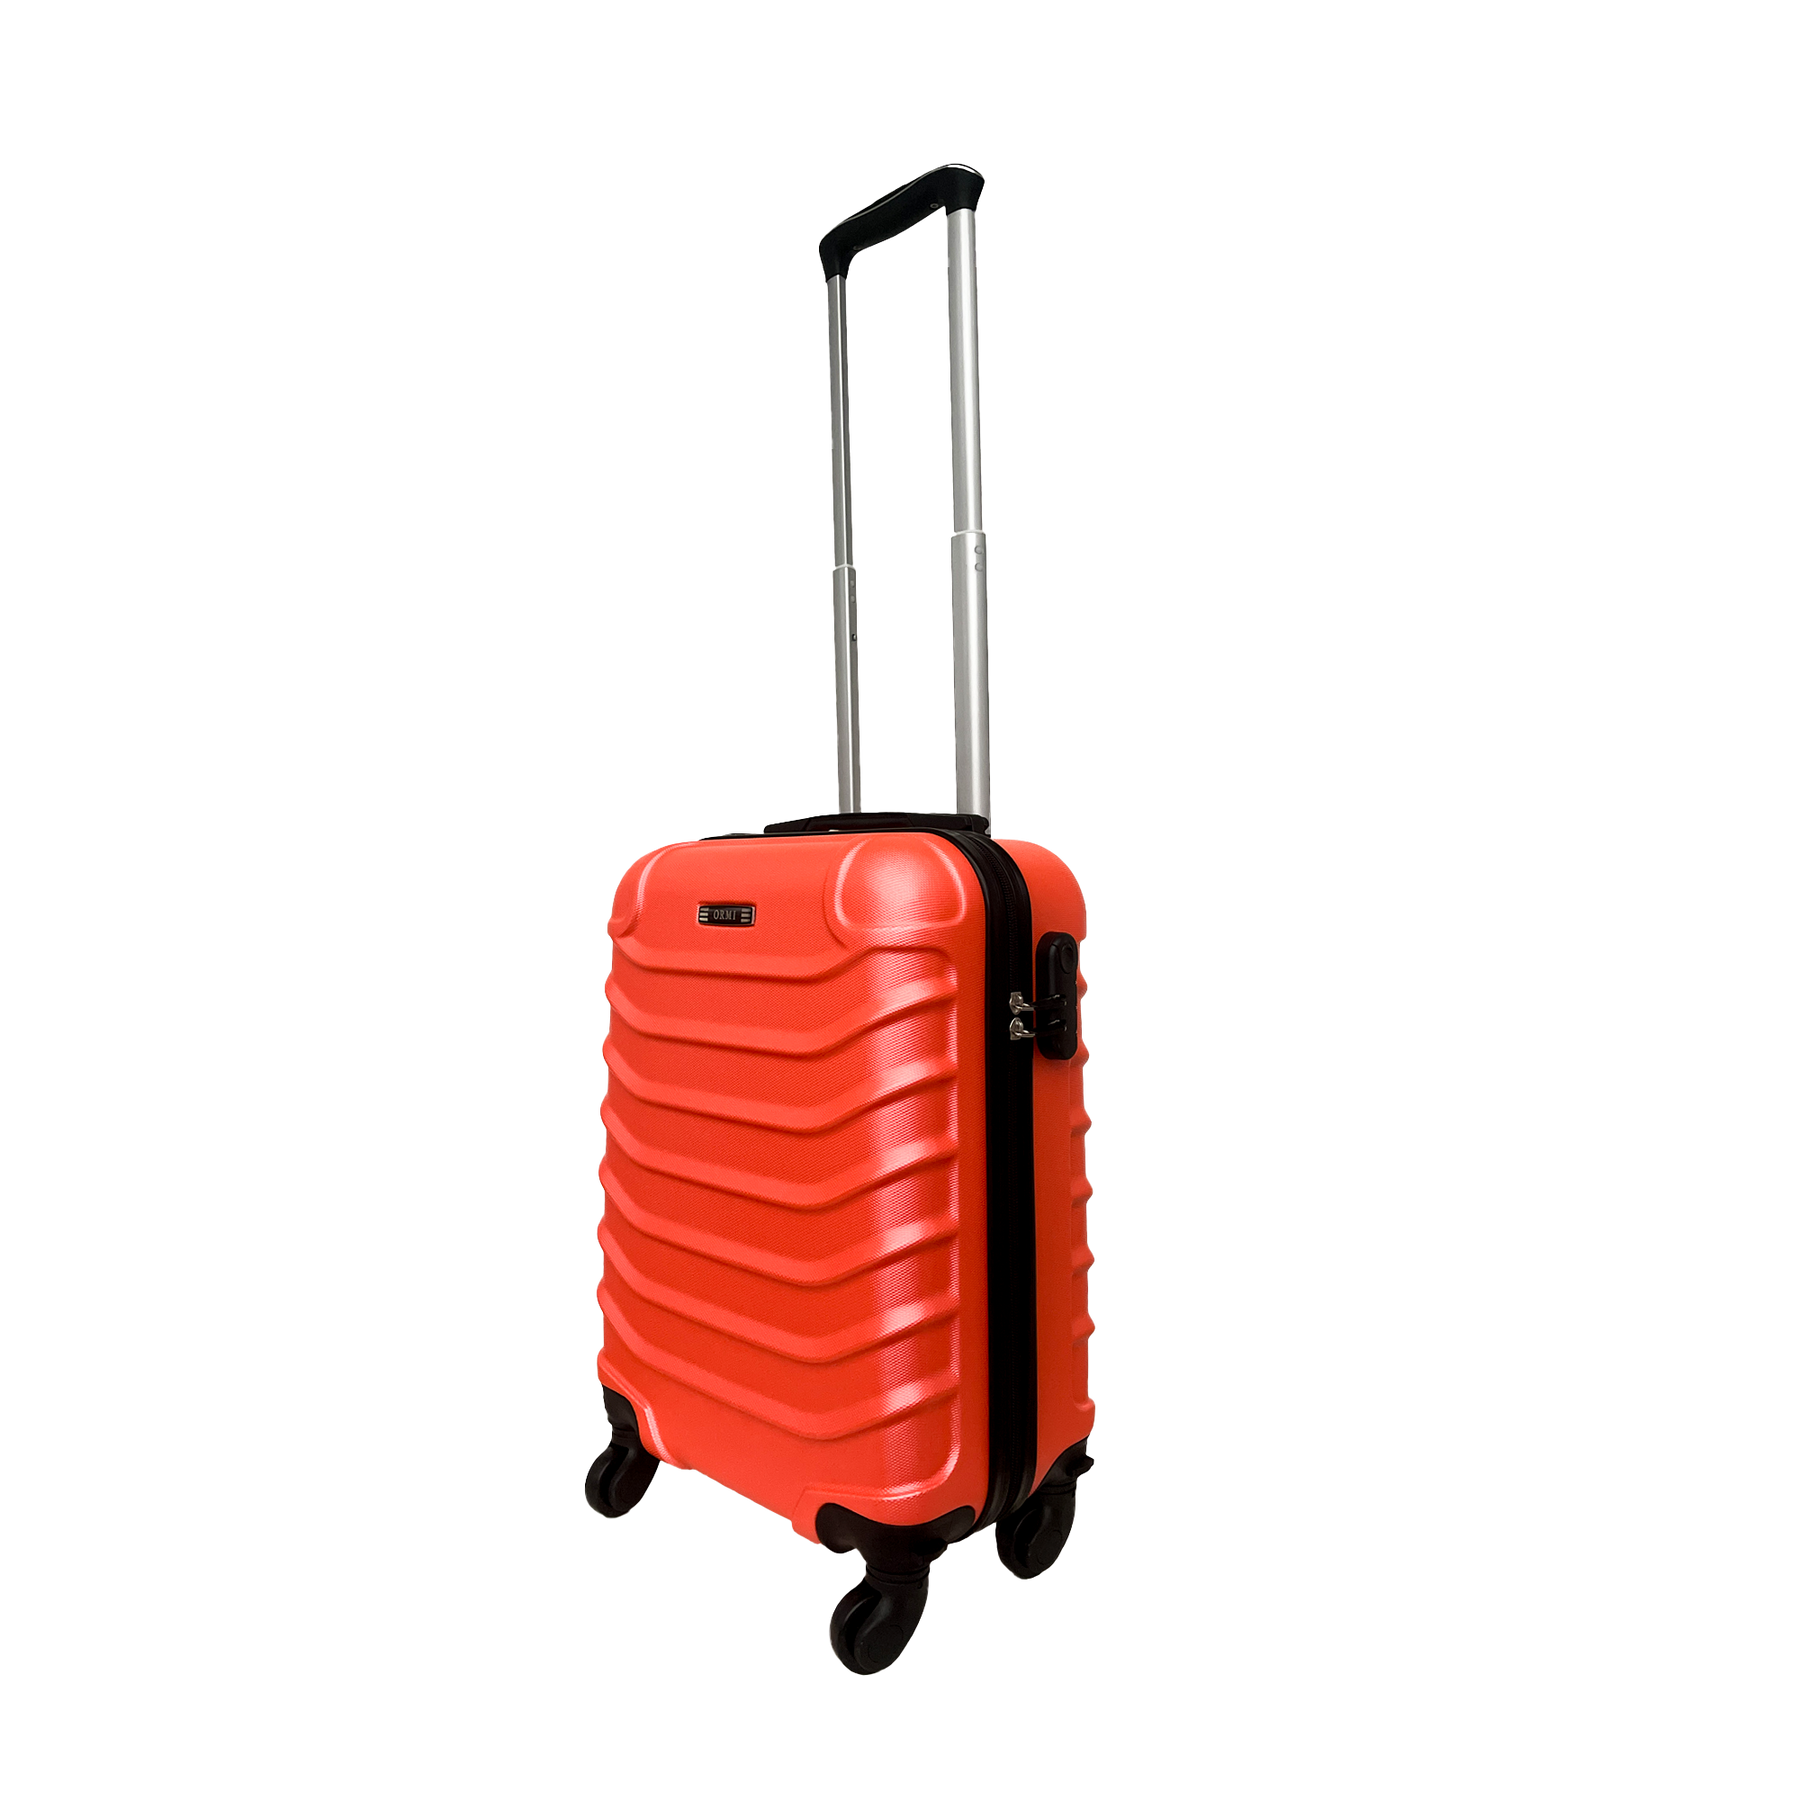 Lld ormi - litet styvt handbagage i ABS 18 "(52x36x20cm) med avtagbara svängbara hjul 360 °